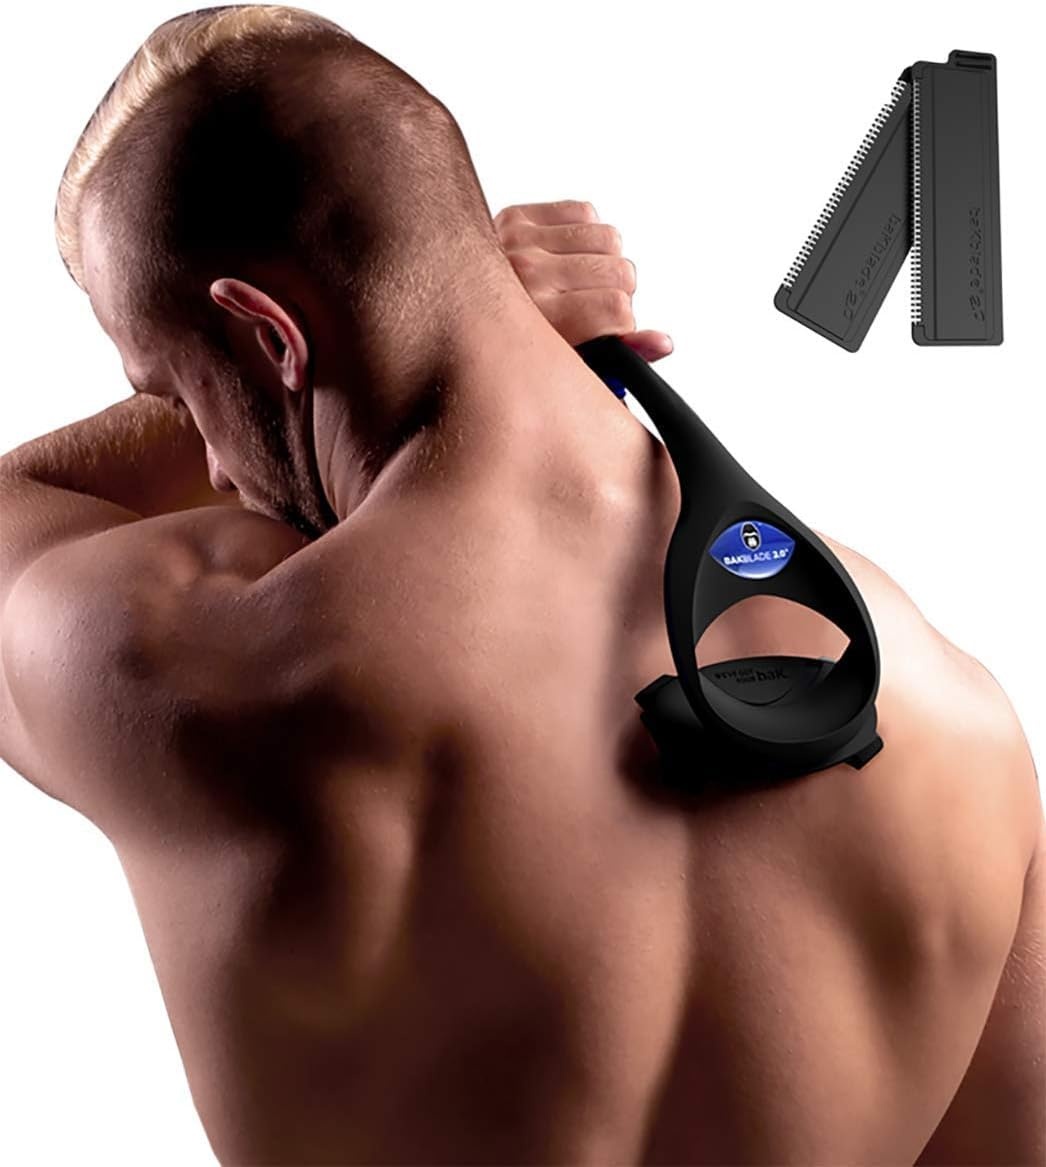 baKblade 2.0 Plus Rückenrasierer Herren - Ergonomischer Rückenhaarentferner für Männer - Brust & Rücken Haarentfernung auch für Armen, Beine & Bauch - Body Shaver Men